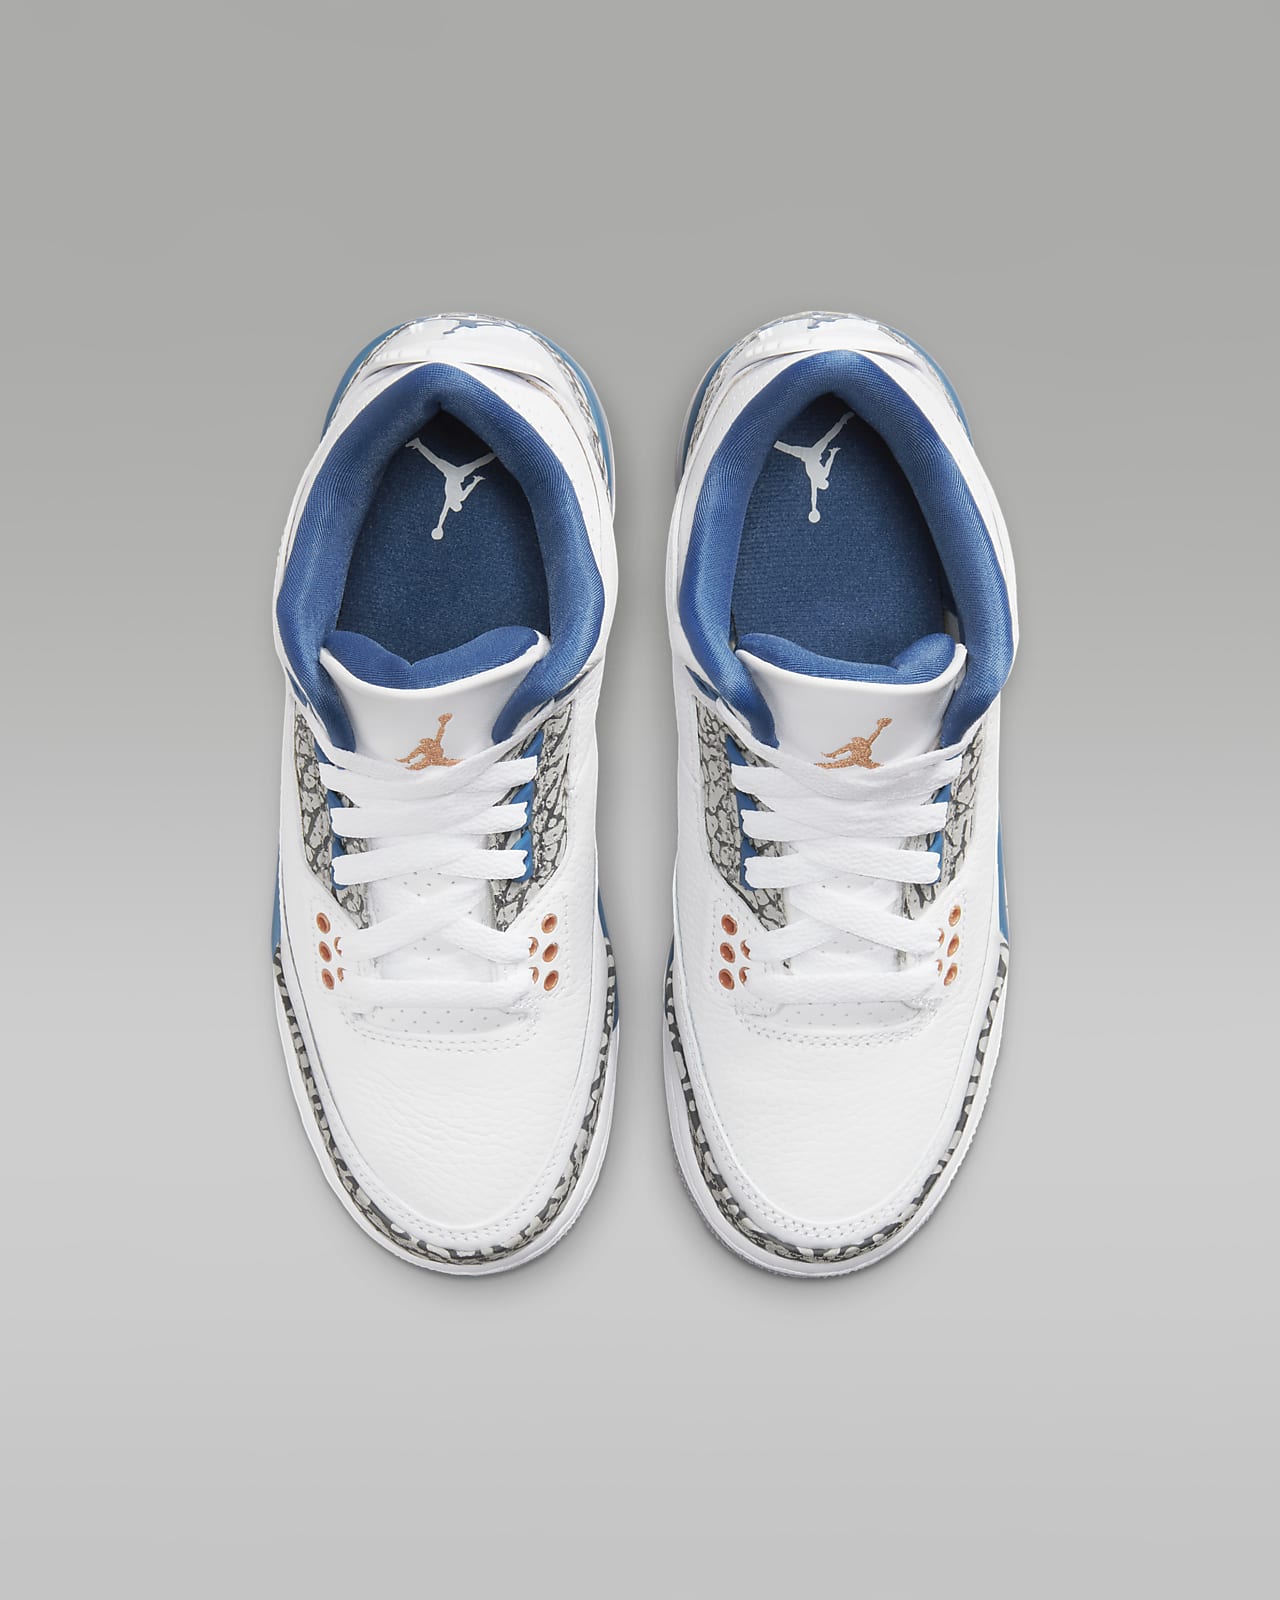 Air Jordan 3 Sneakers